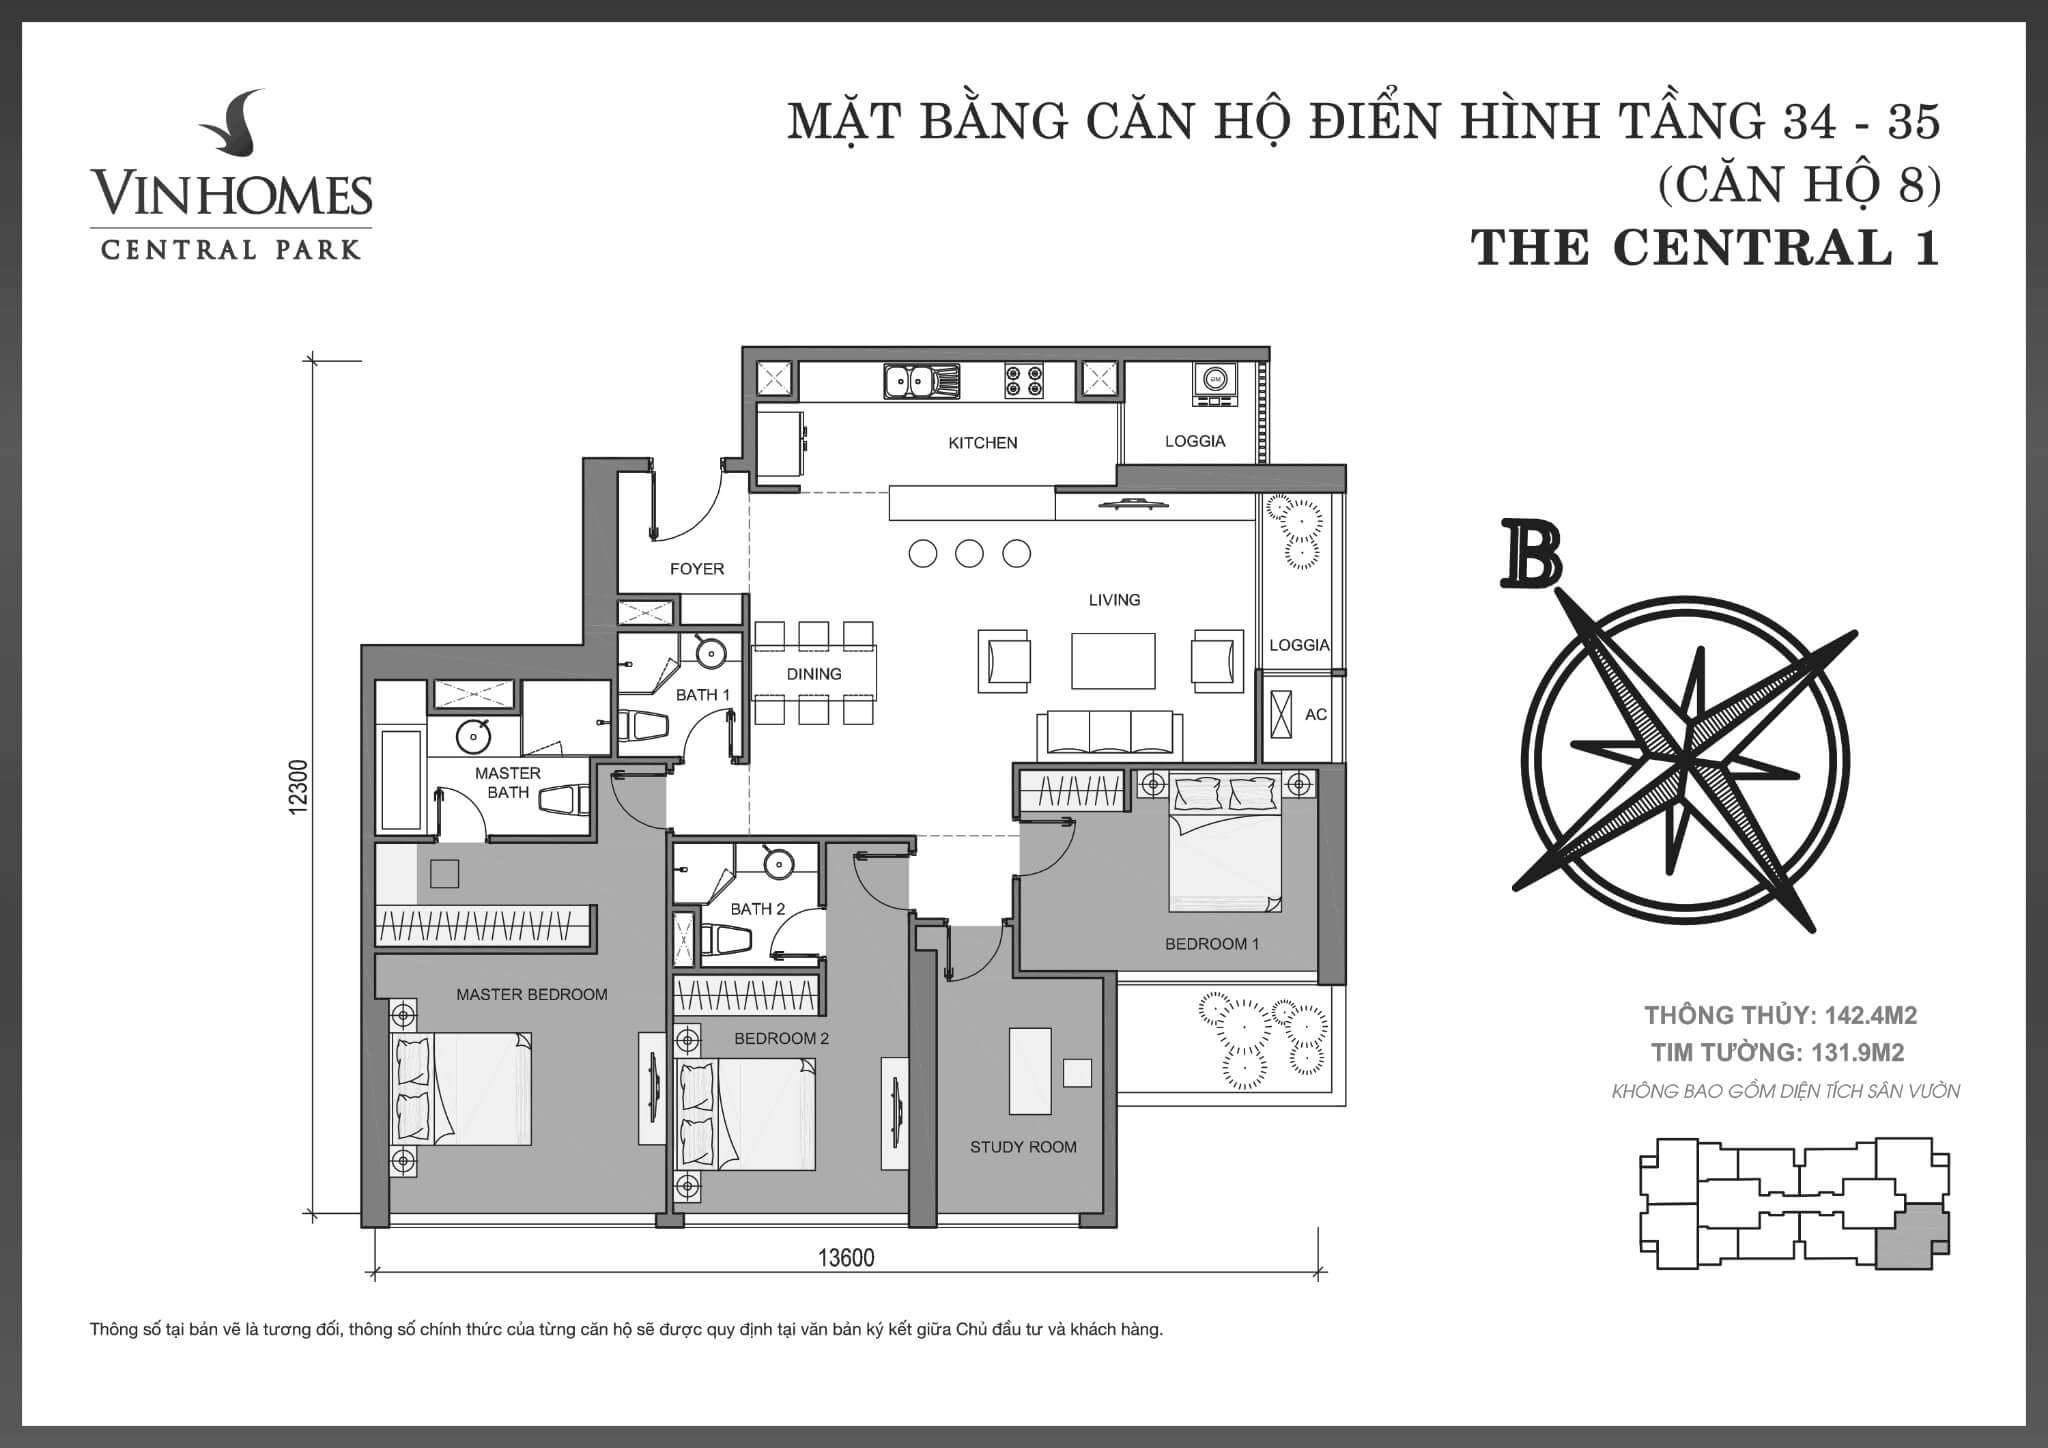 layout căn hộ số 8 tầng 34-35 Central 1